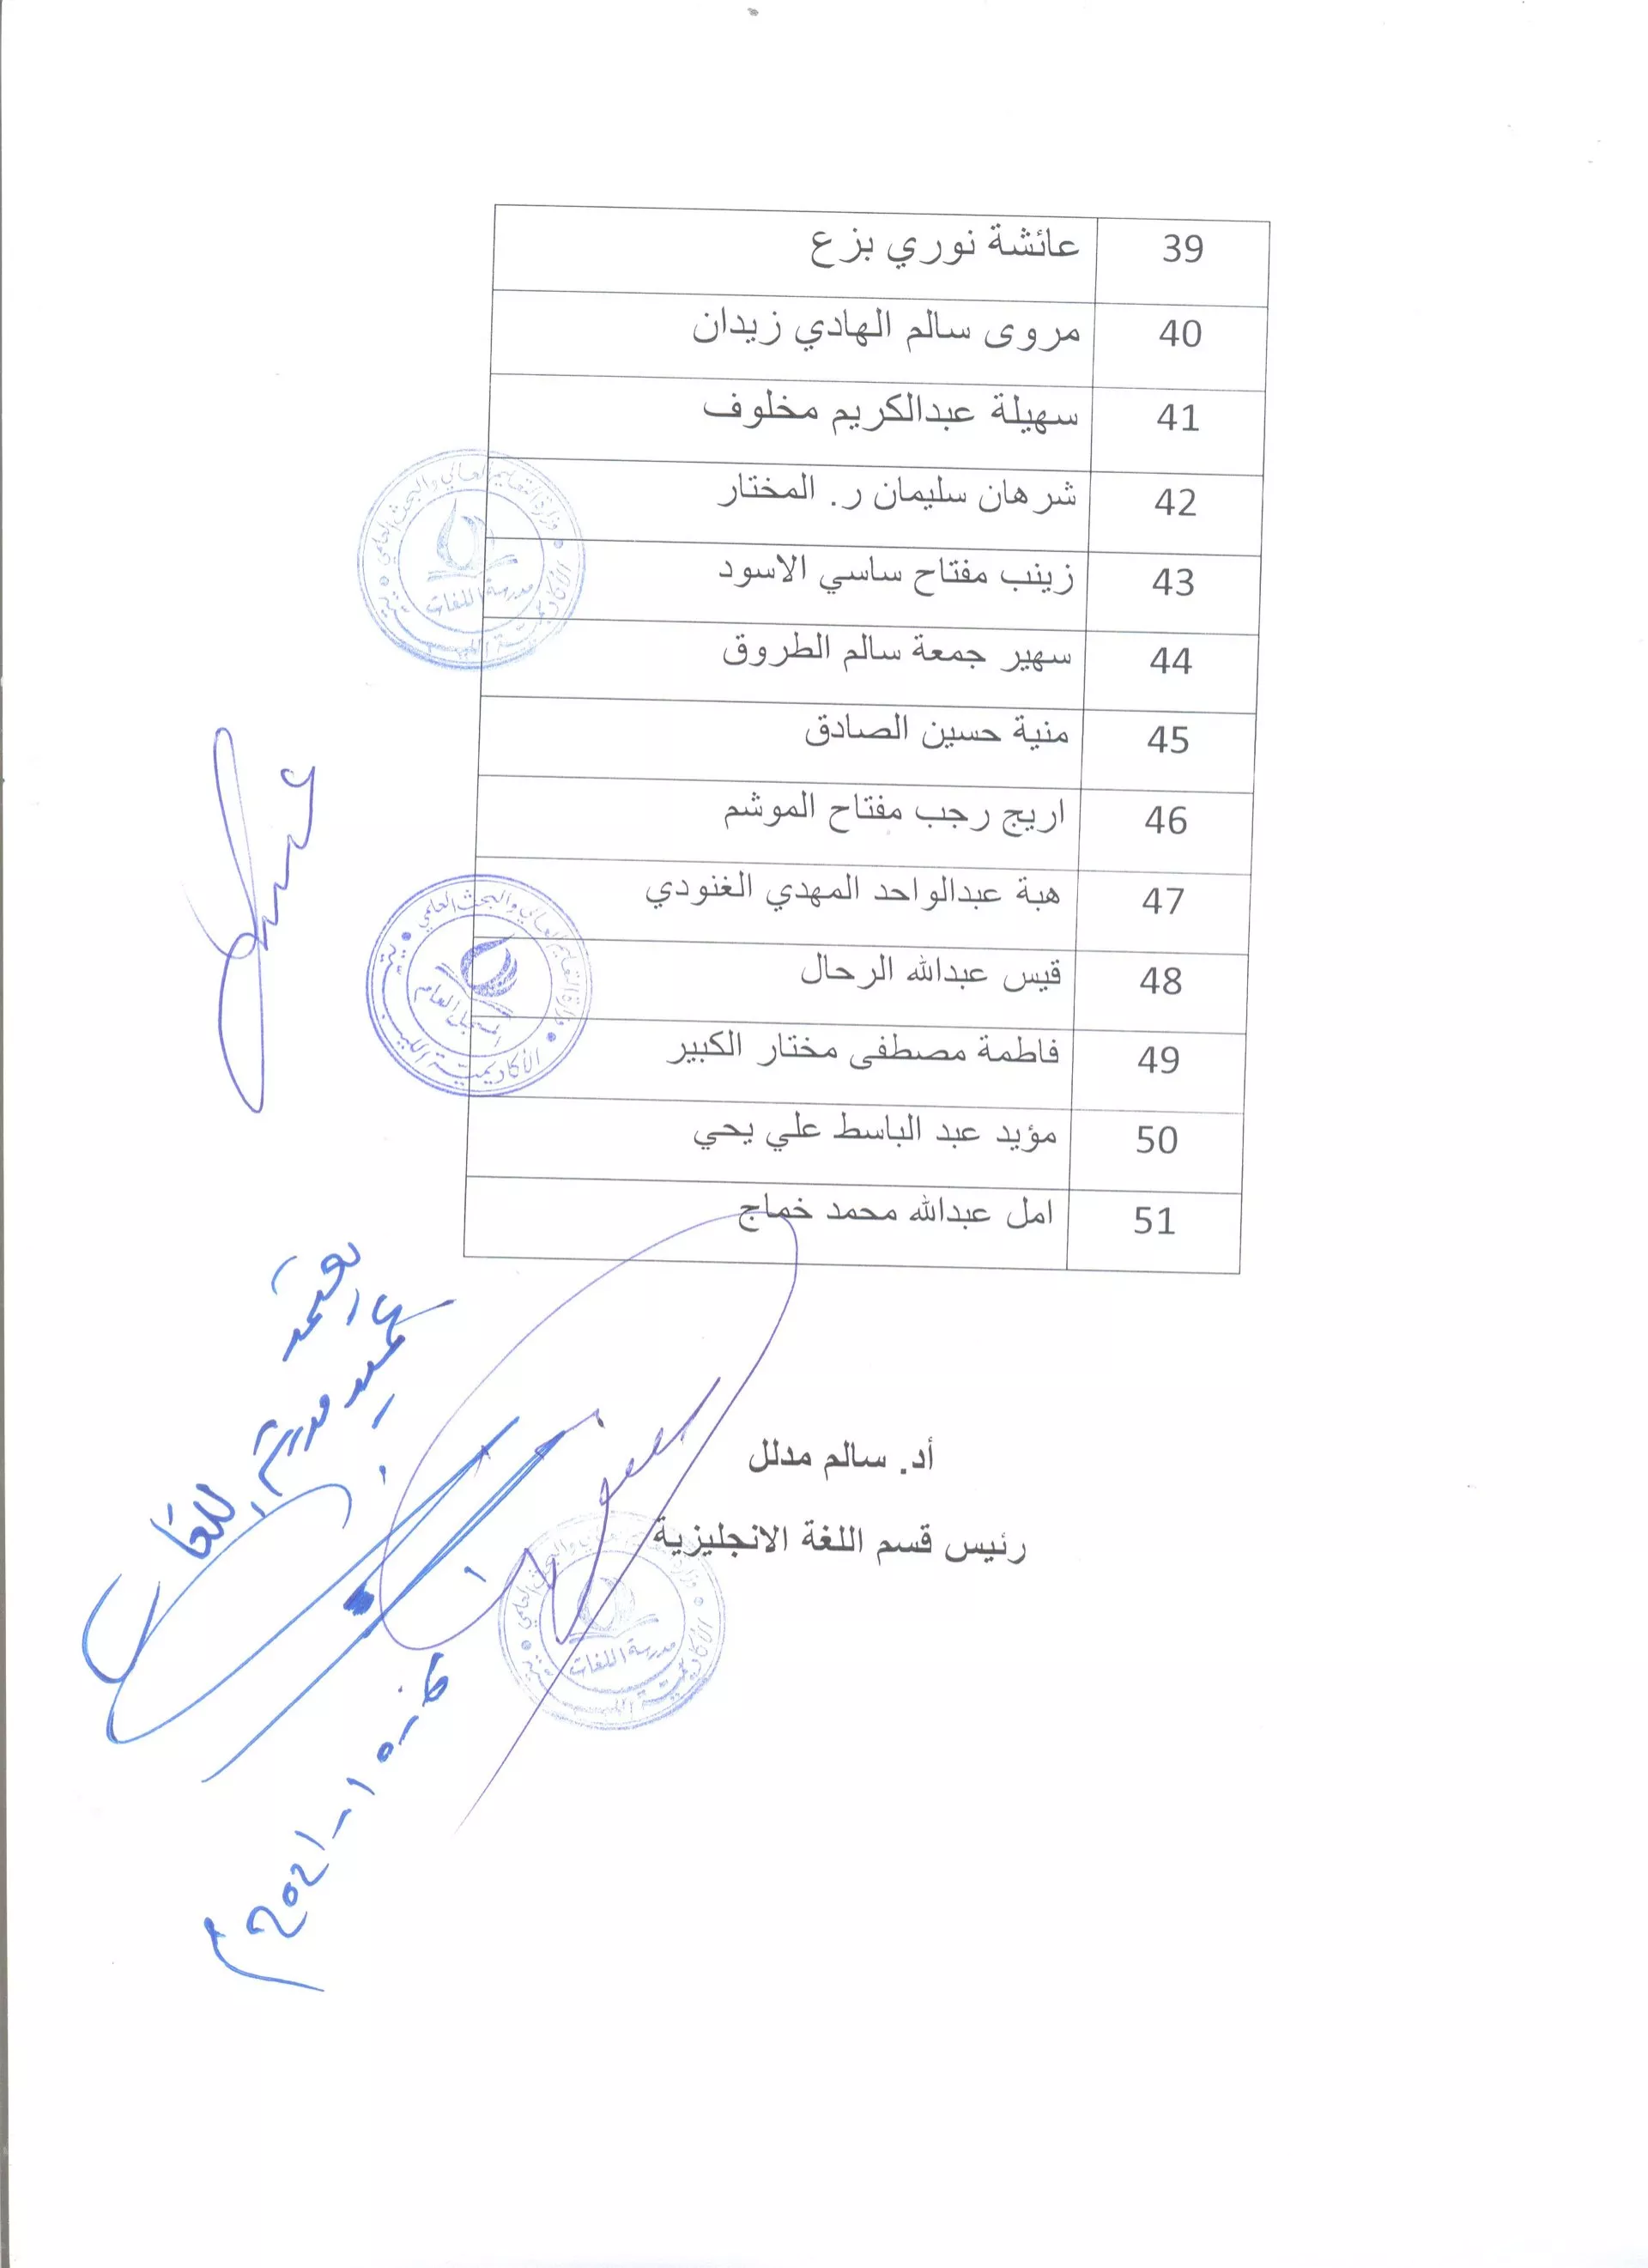 نتائج المفاضلة للطلاب المتقدمين للدراسة بالأكاديمية الليبية 2021 - 2022